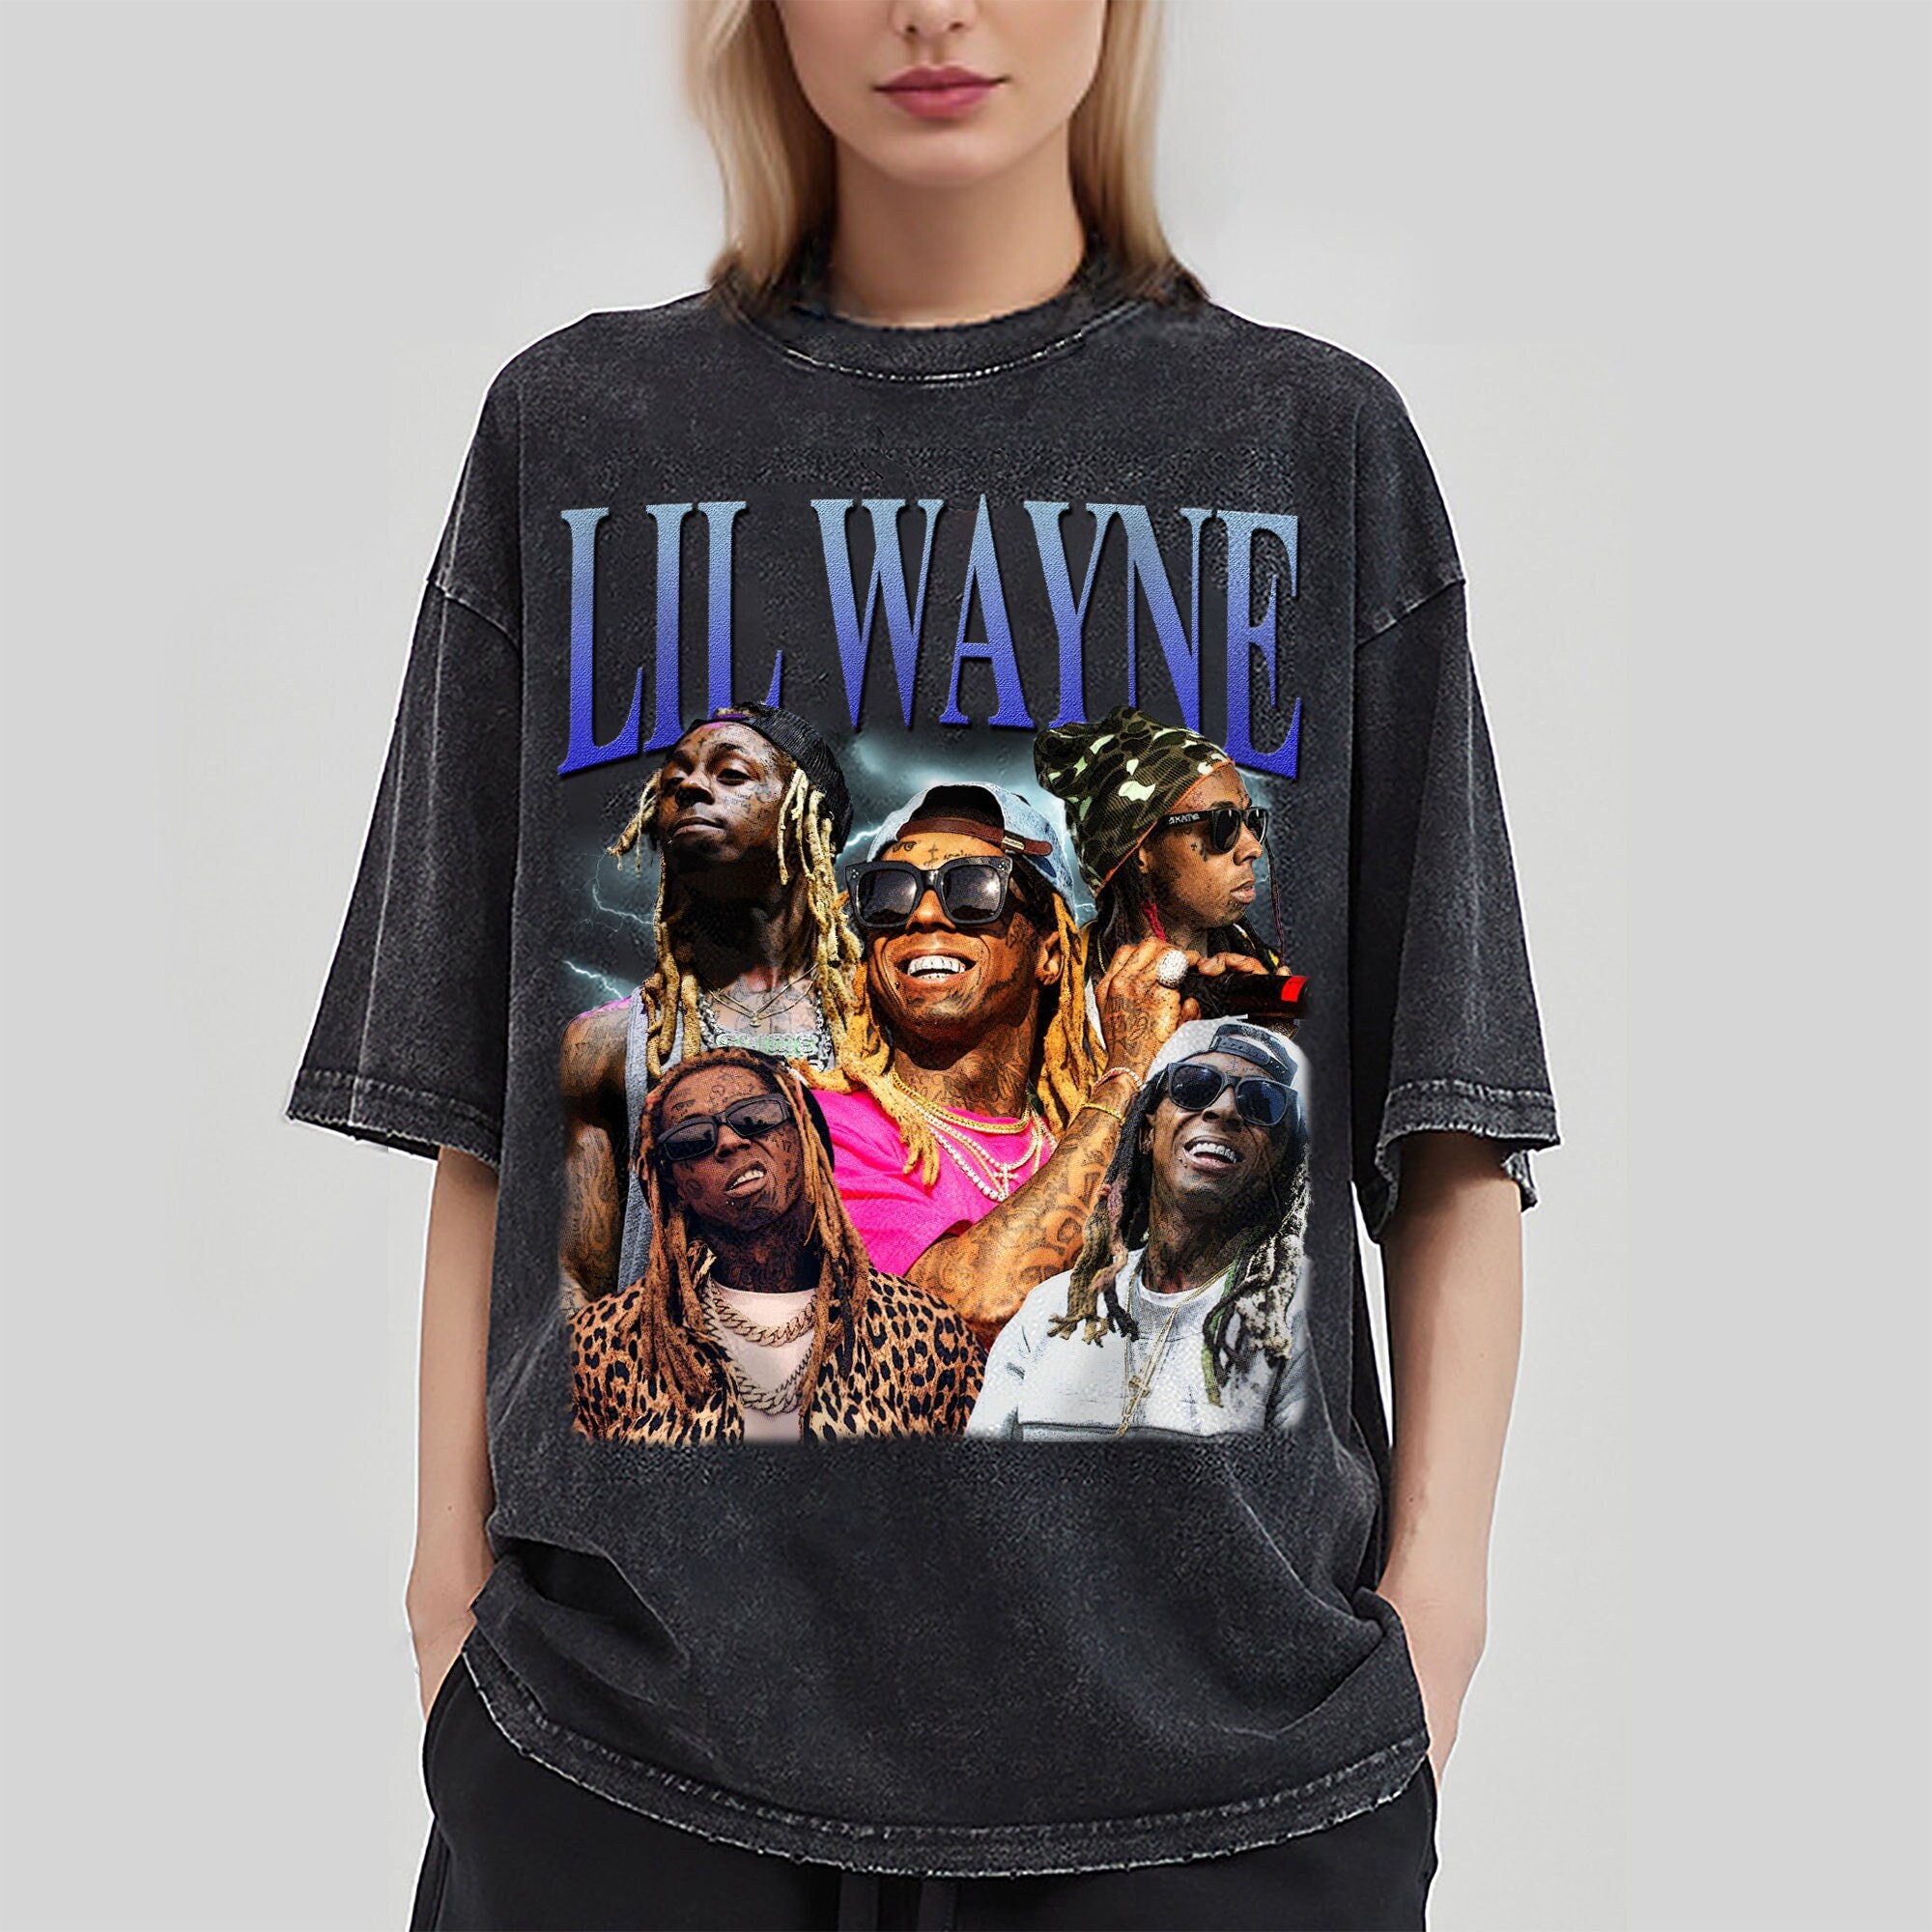 Lil Wayne Tshirt, Lil Wayne Tee, Lil Wayne Rap Tee, Lil Wayne Merch sold  by Isaac Malakkai, SKU 40393509